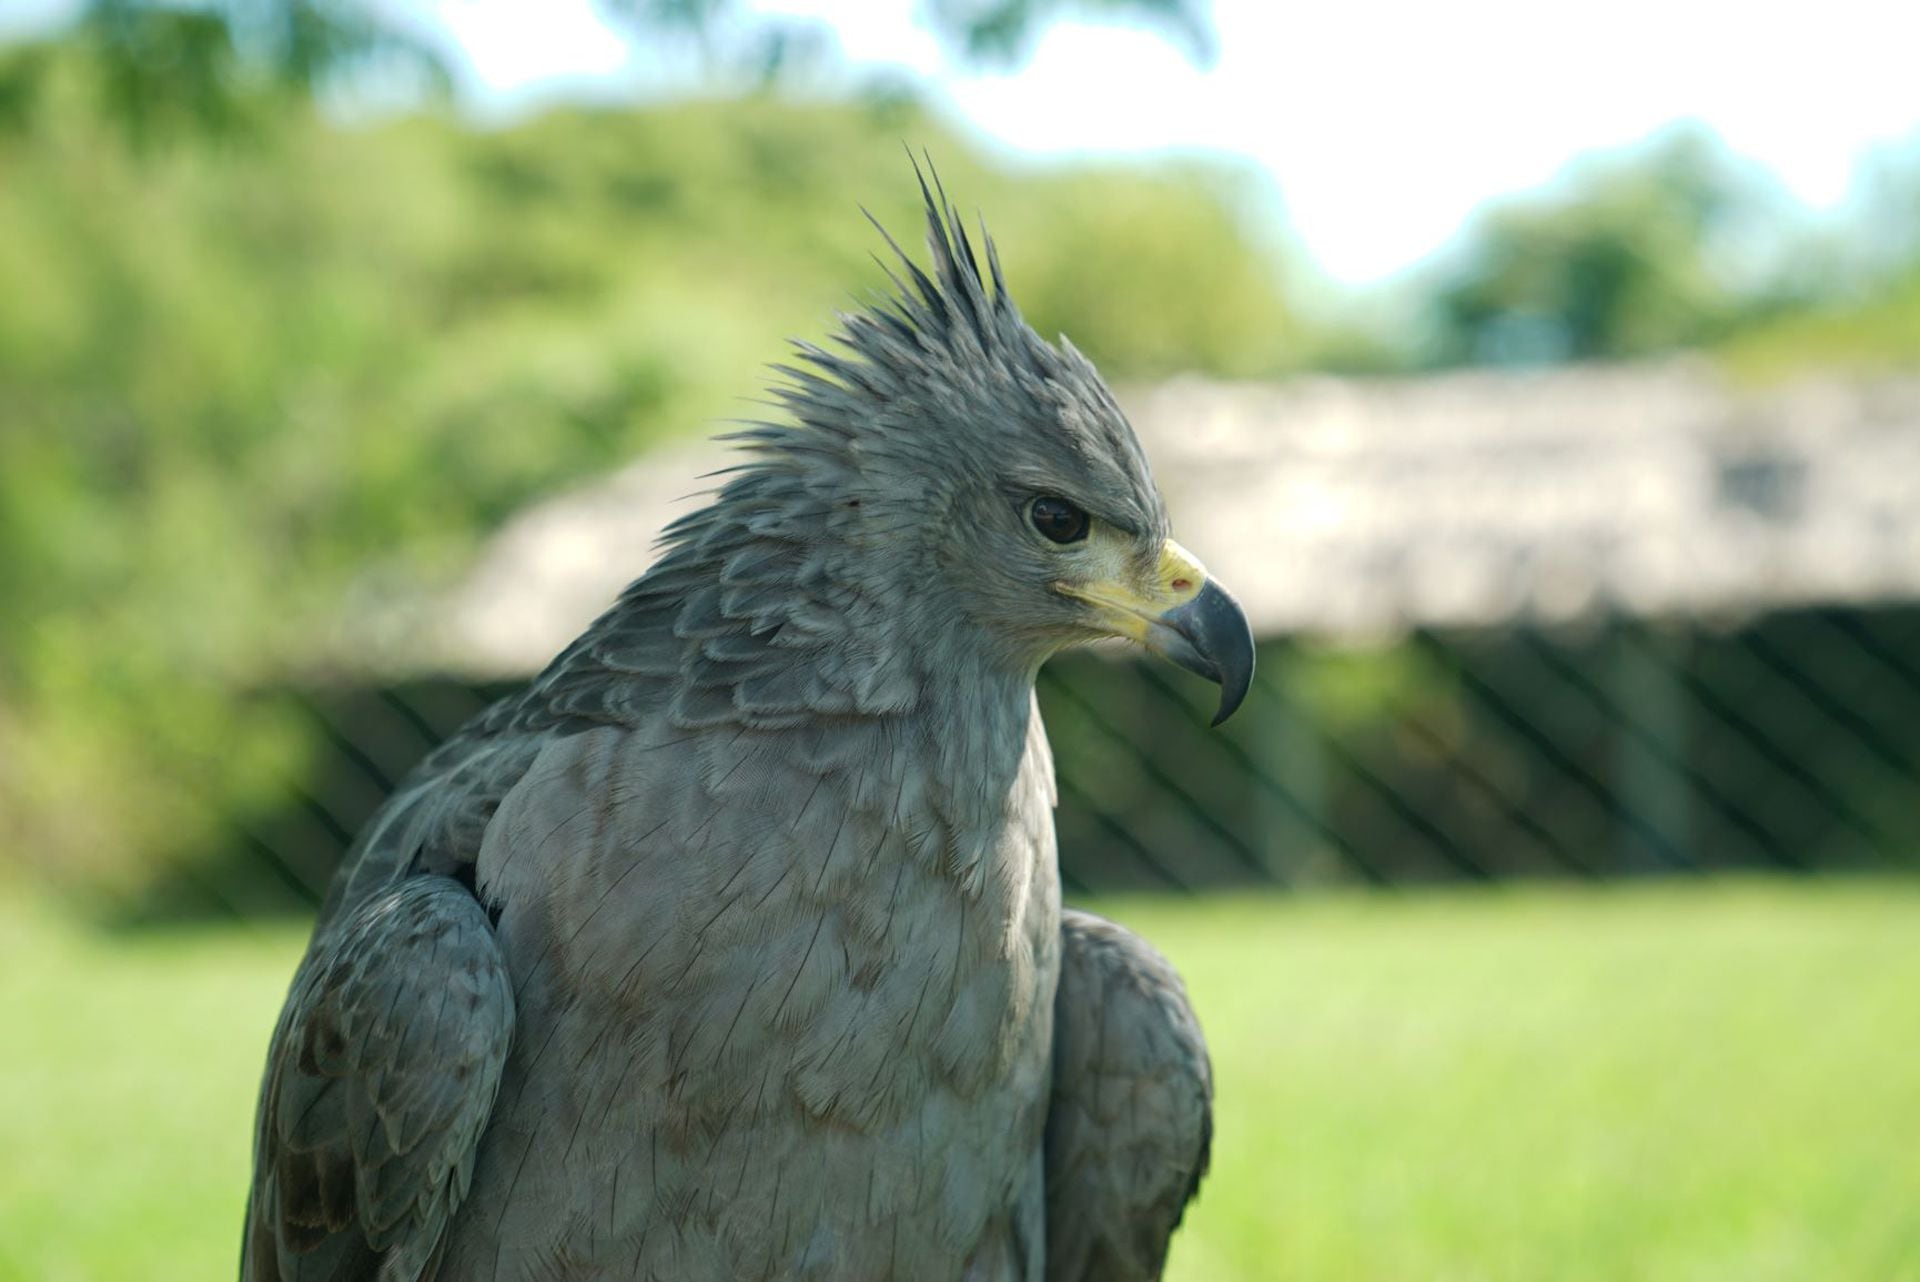 El águila coronada es una de las aves rapaces más amenazadas de Sudamérica considerándose una especie en peligro de extinción a nivel nacional e internacional